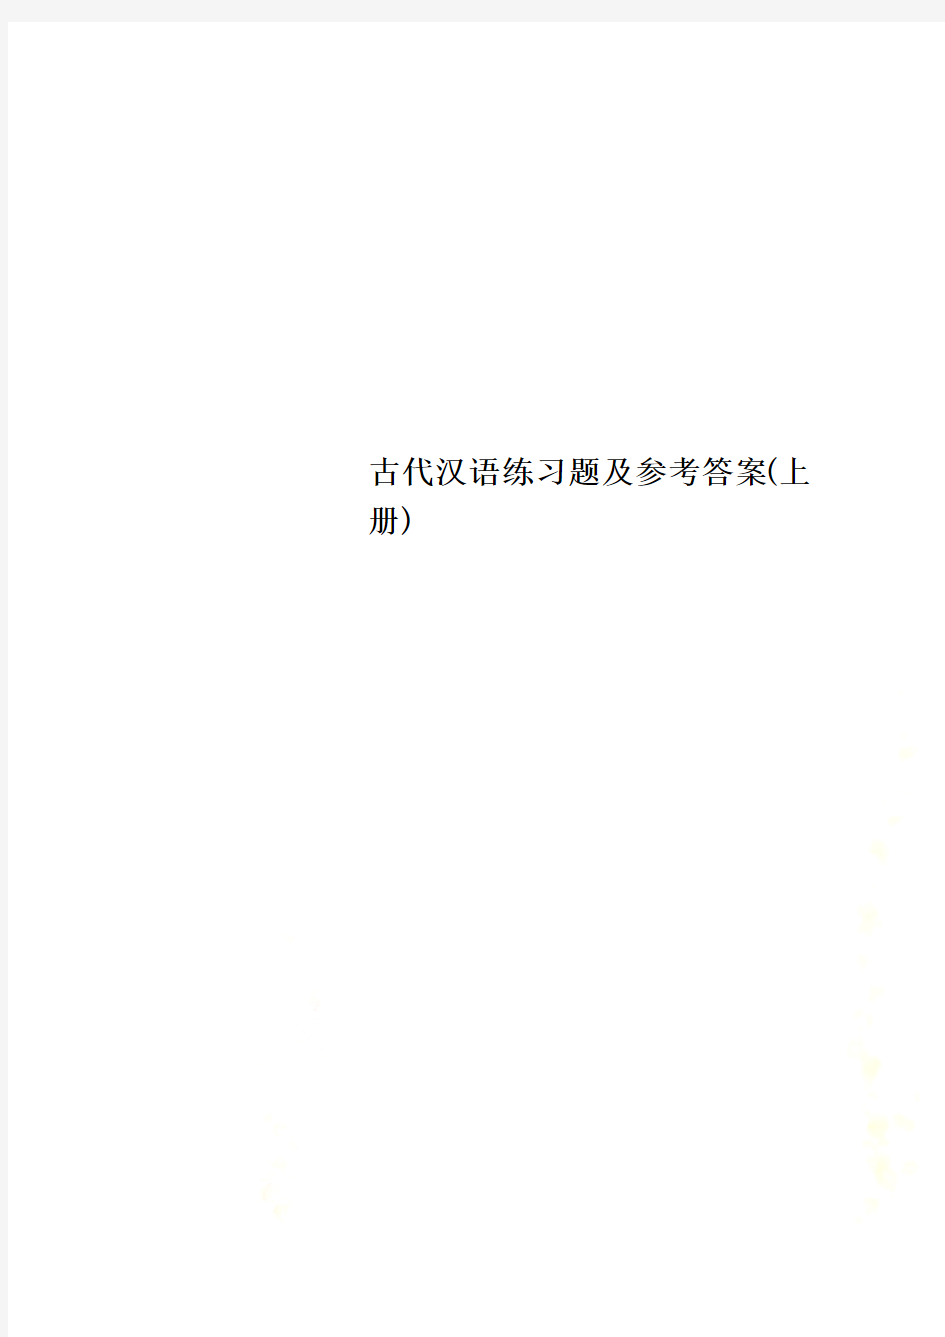 古代汉语练习题及参考答案(上册)